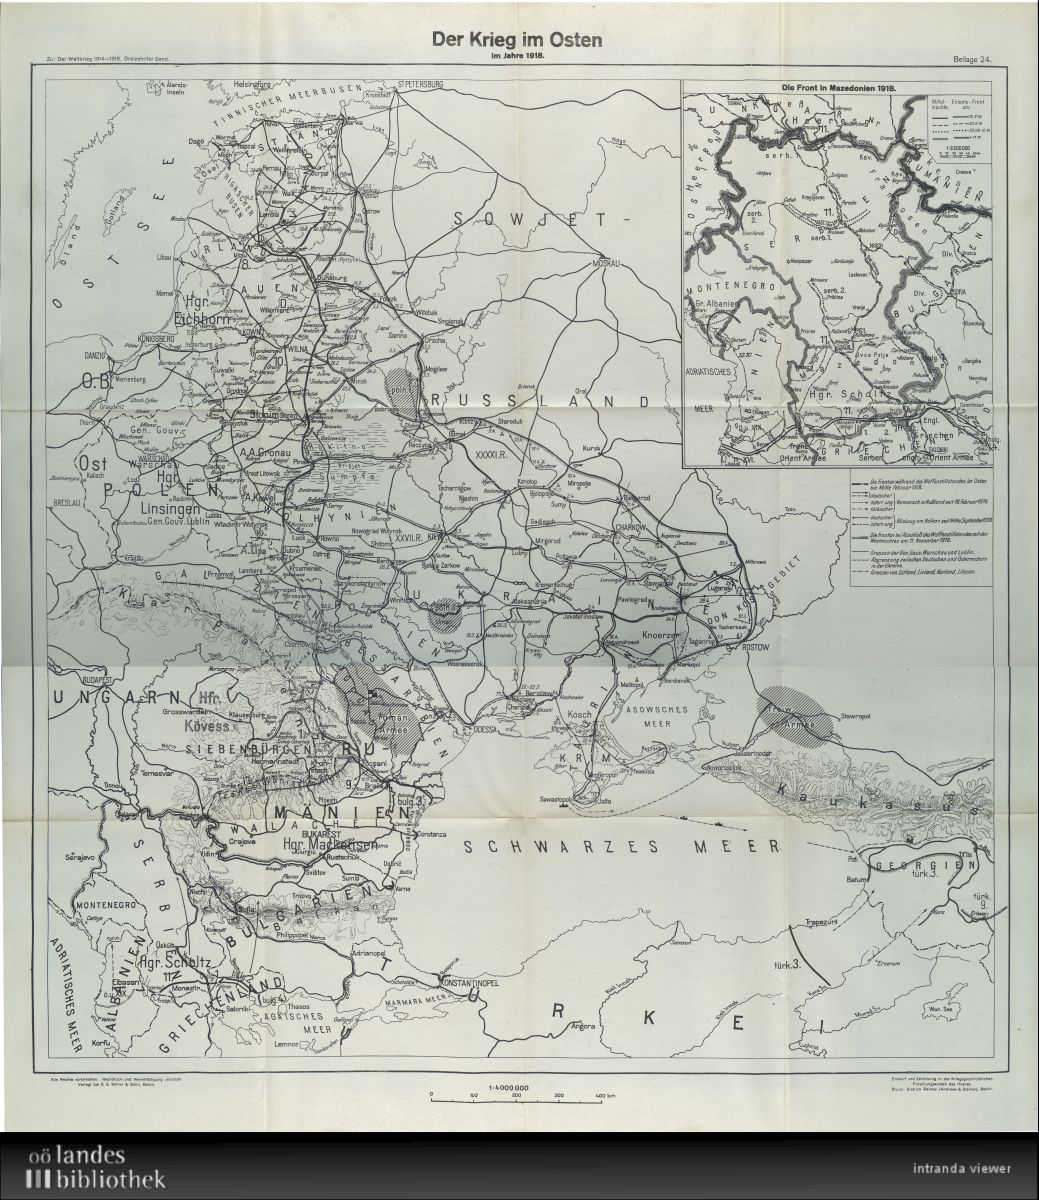 Карта из официальной немецкой истории Первой мировой. Болбочану с Сикевичем там места нет